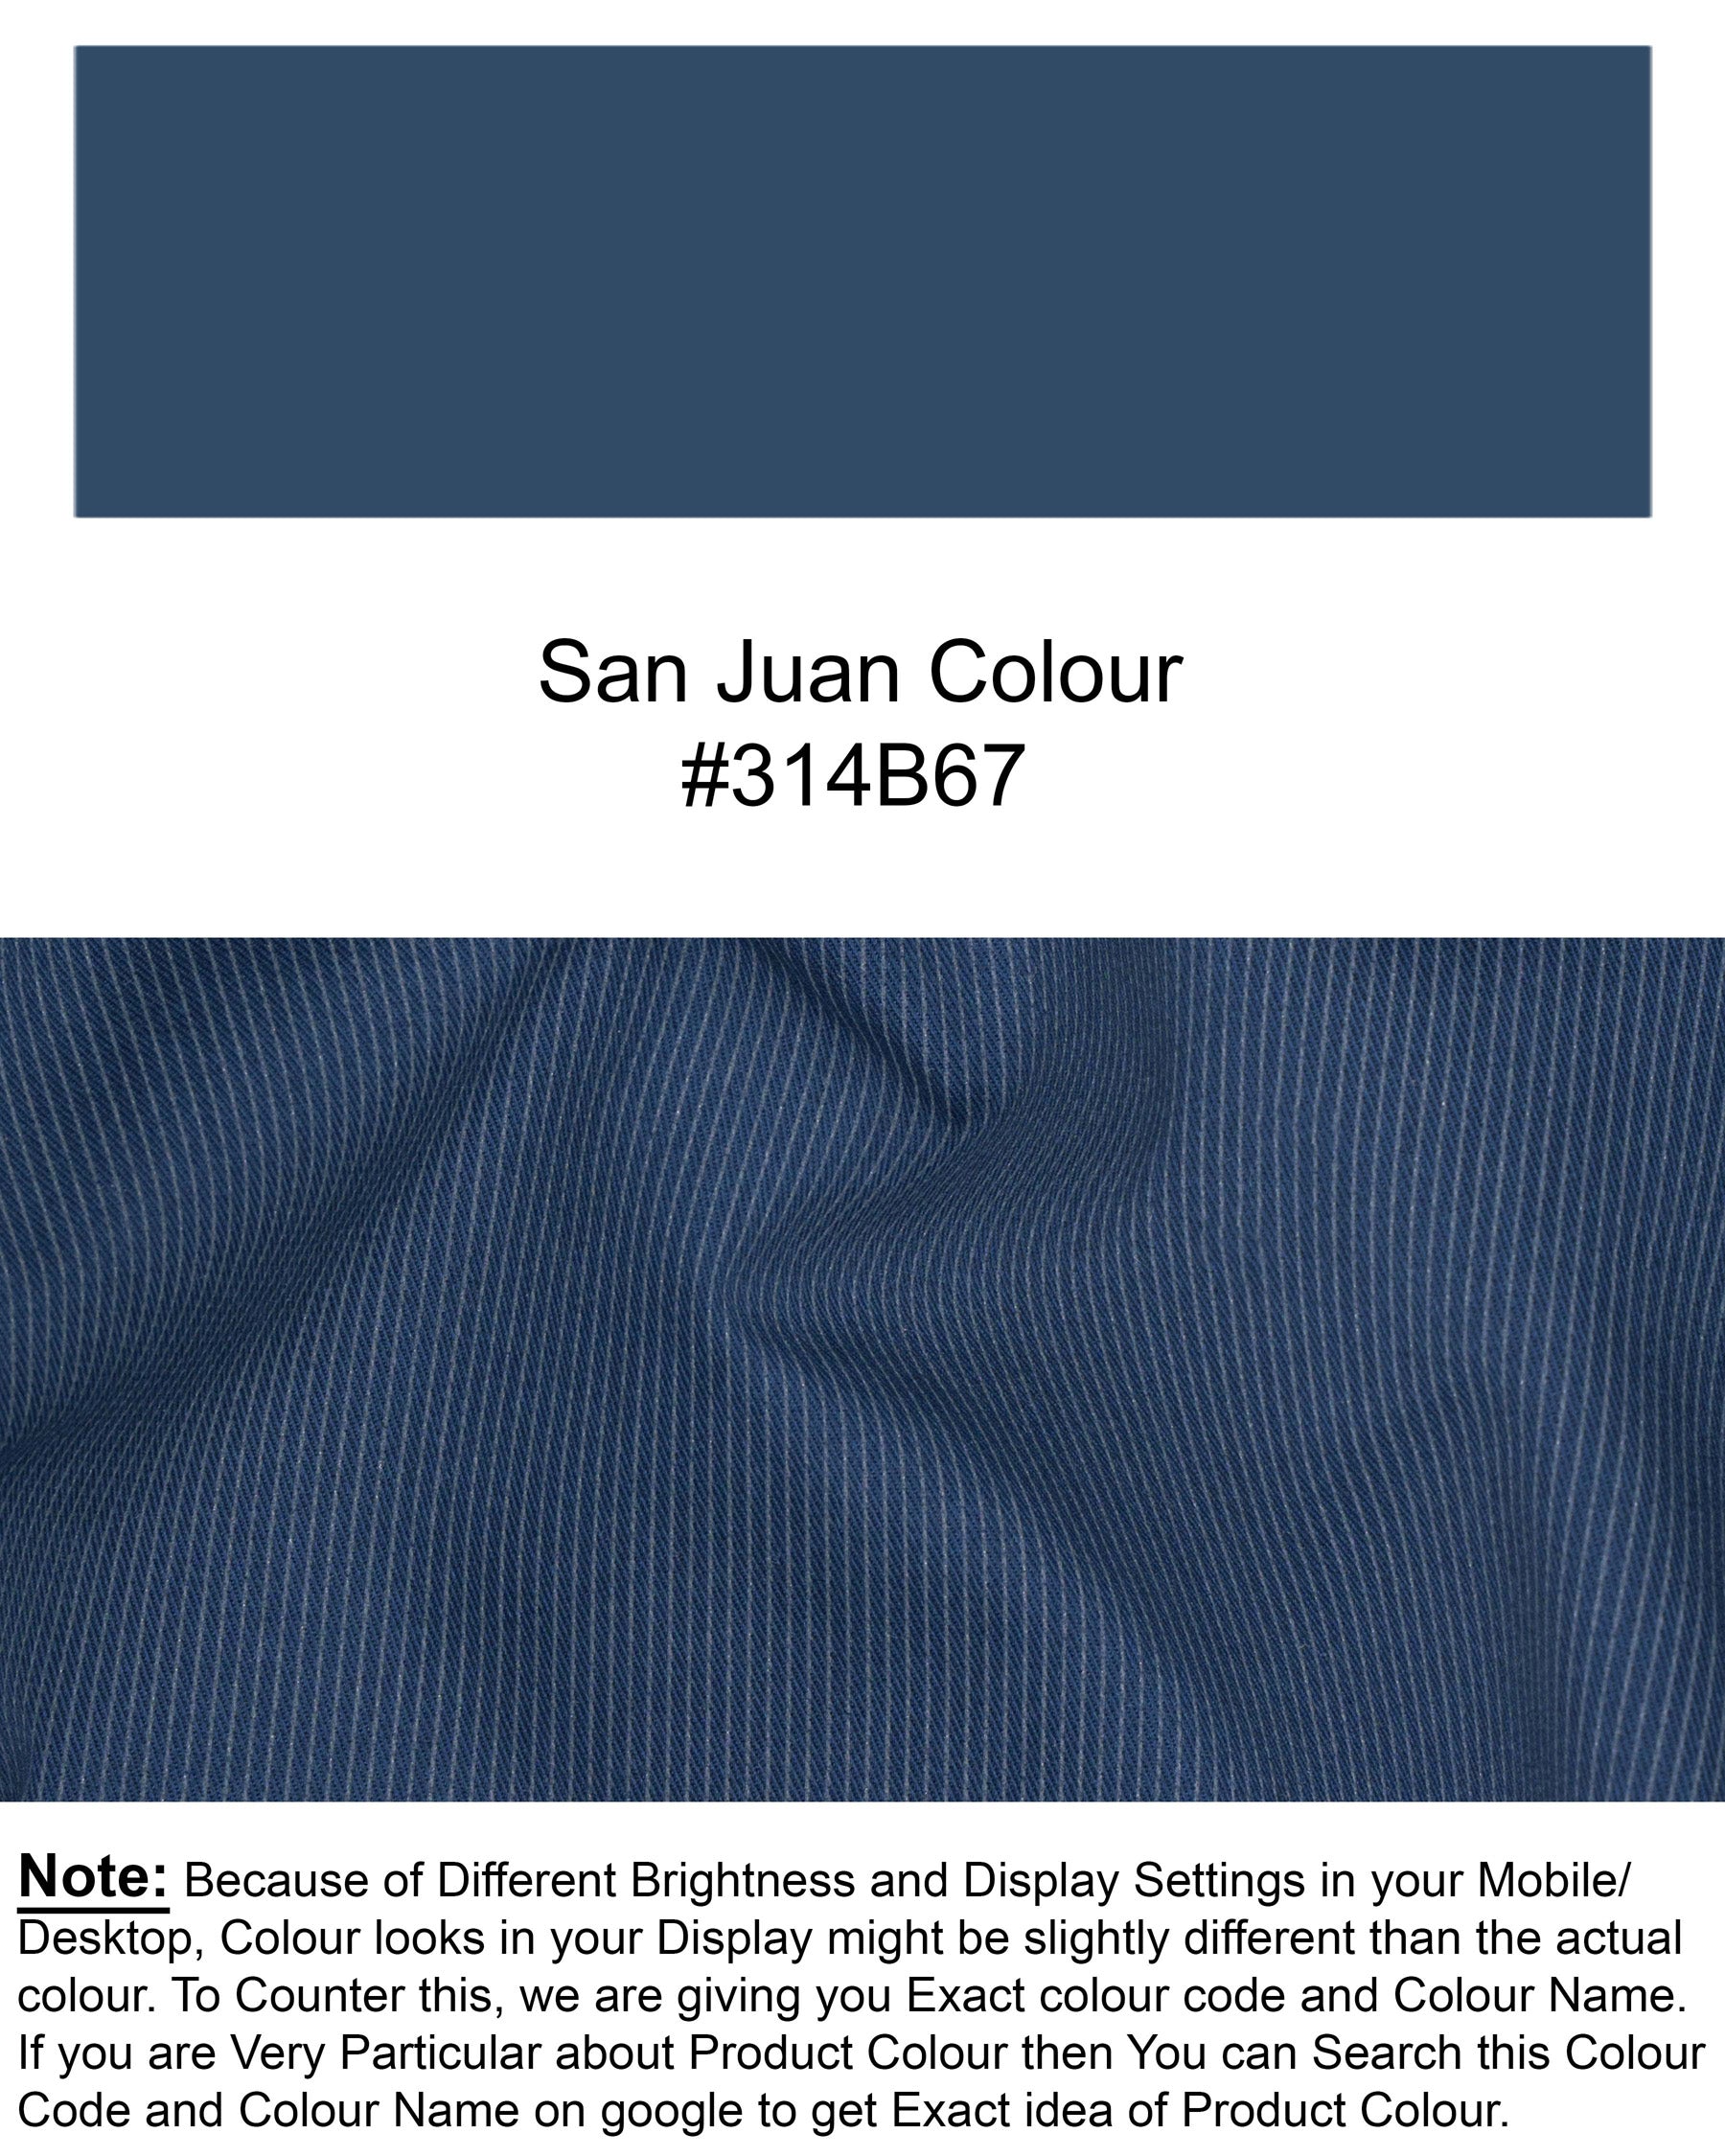 San Juan Blue Subtle Striped Premium Cotton Sports Waistcoat V1569-36, V1569-38, V1569-40, V1569-42, V1569-44, V1569-46, V1569-48, V1569-50, V1569-52, V1569-54, V1569-56, V1569-58, V1569-60